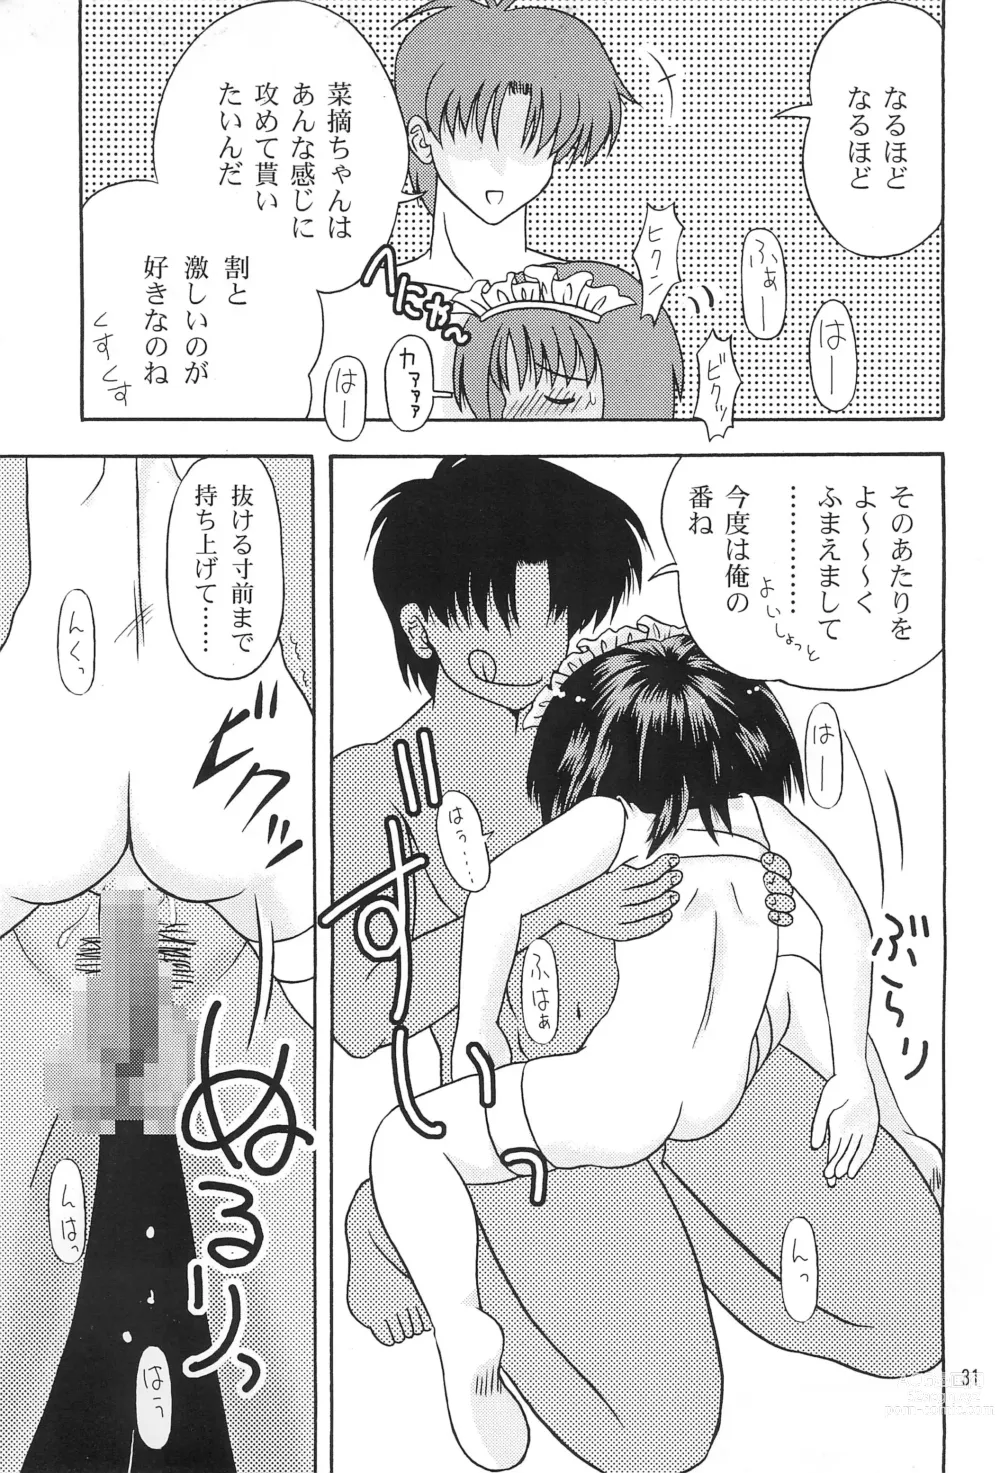 Page 33 of doujinshi Kokuin -Chouai-